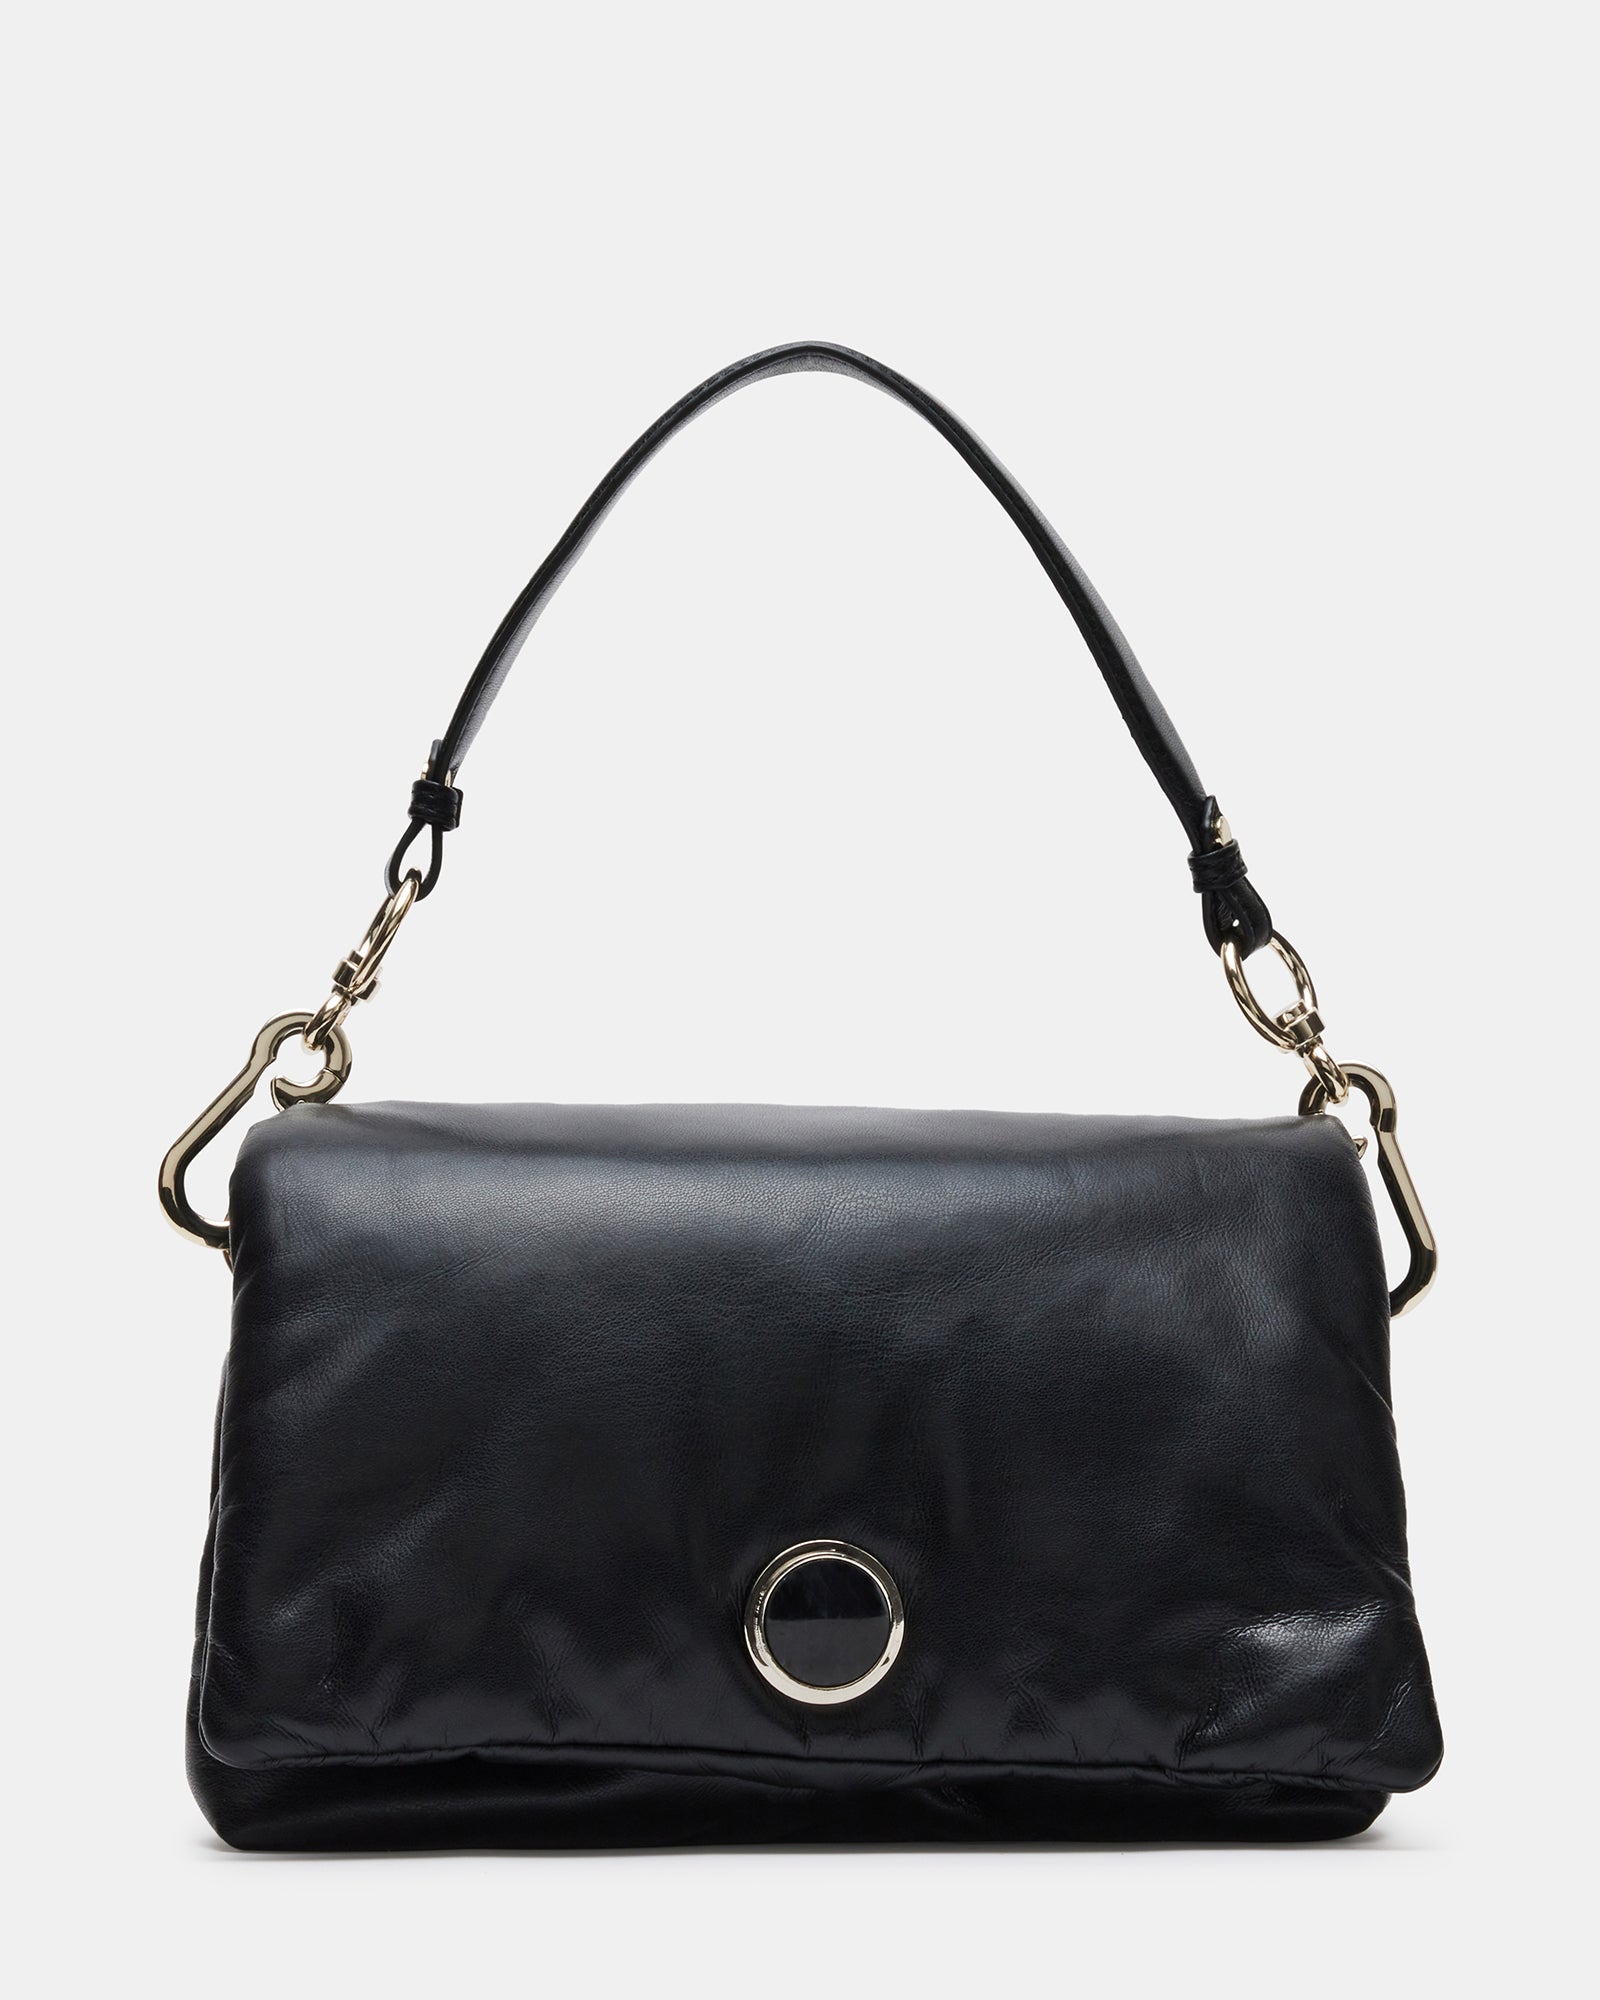 LOLAA Bag Black | Women's Crossbody Bags – Steve Madden